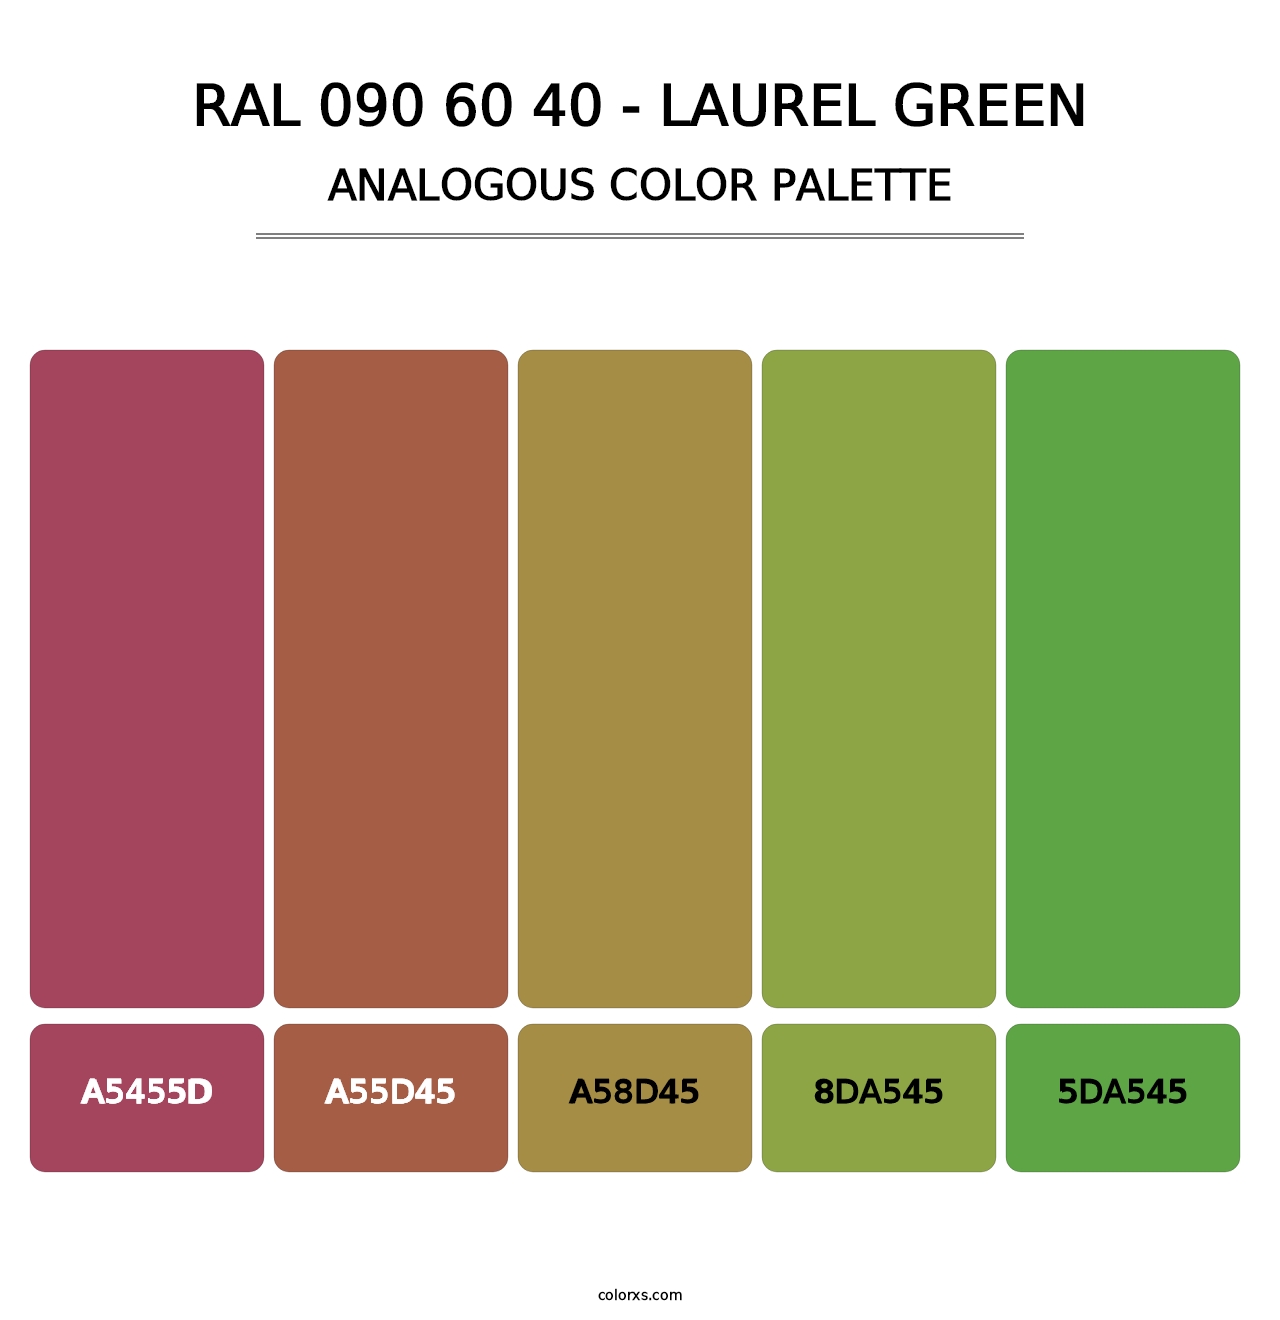 RAL 090 60 40 - Laurel Green - Analogous Color Palette